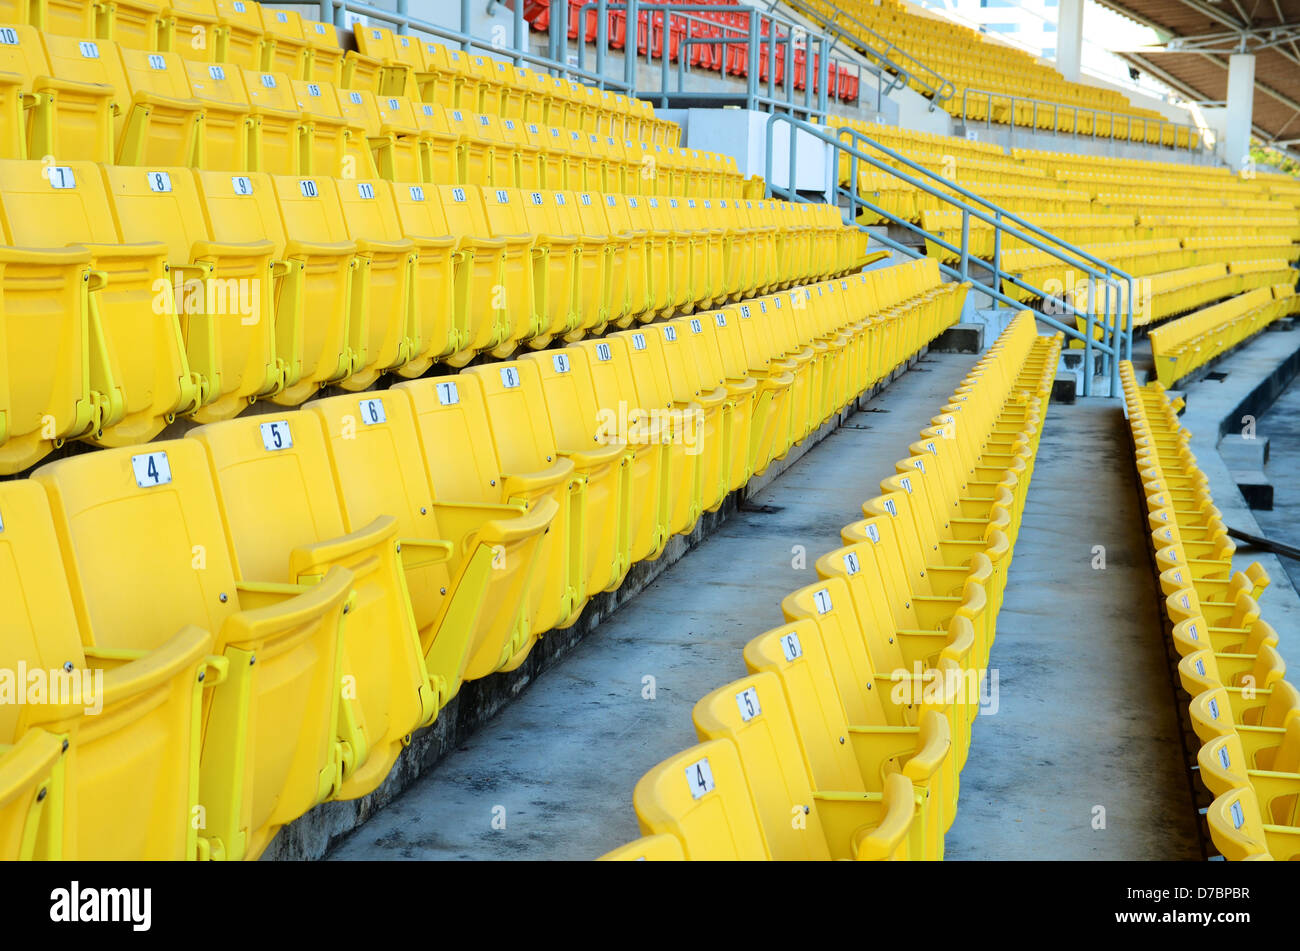 Stadium seats Stock Photo